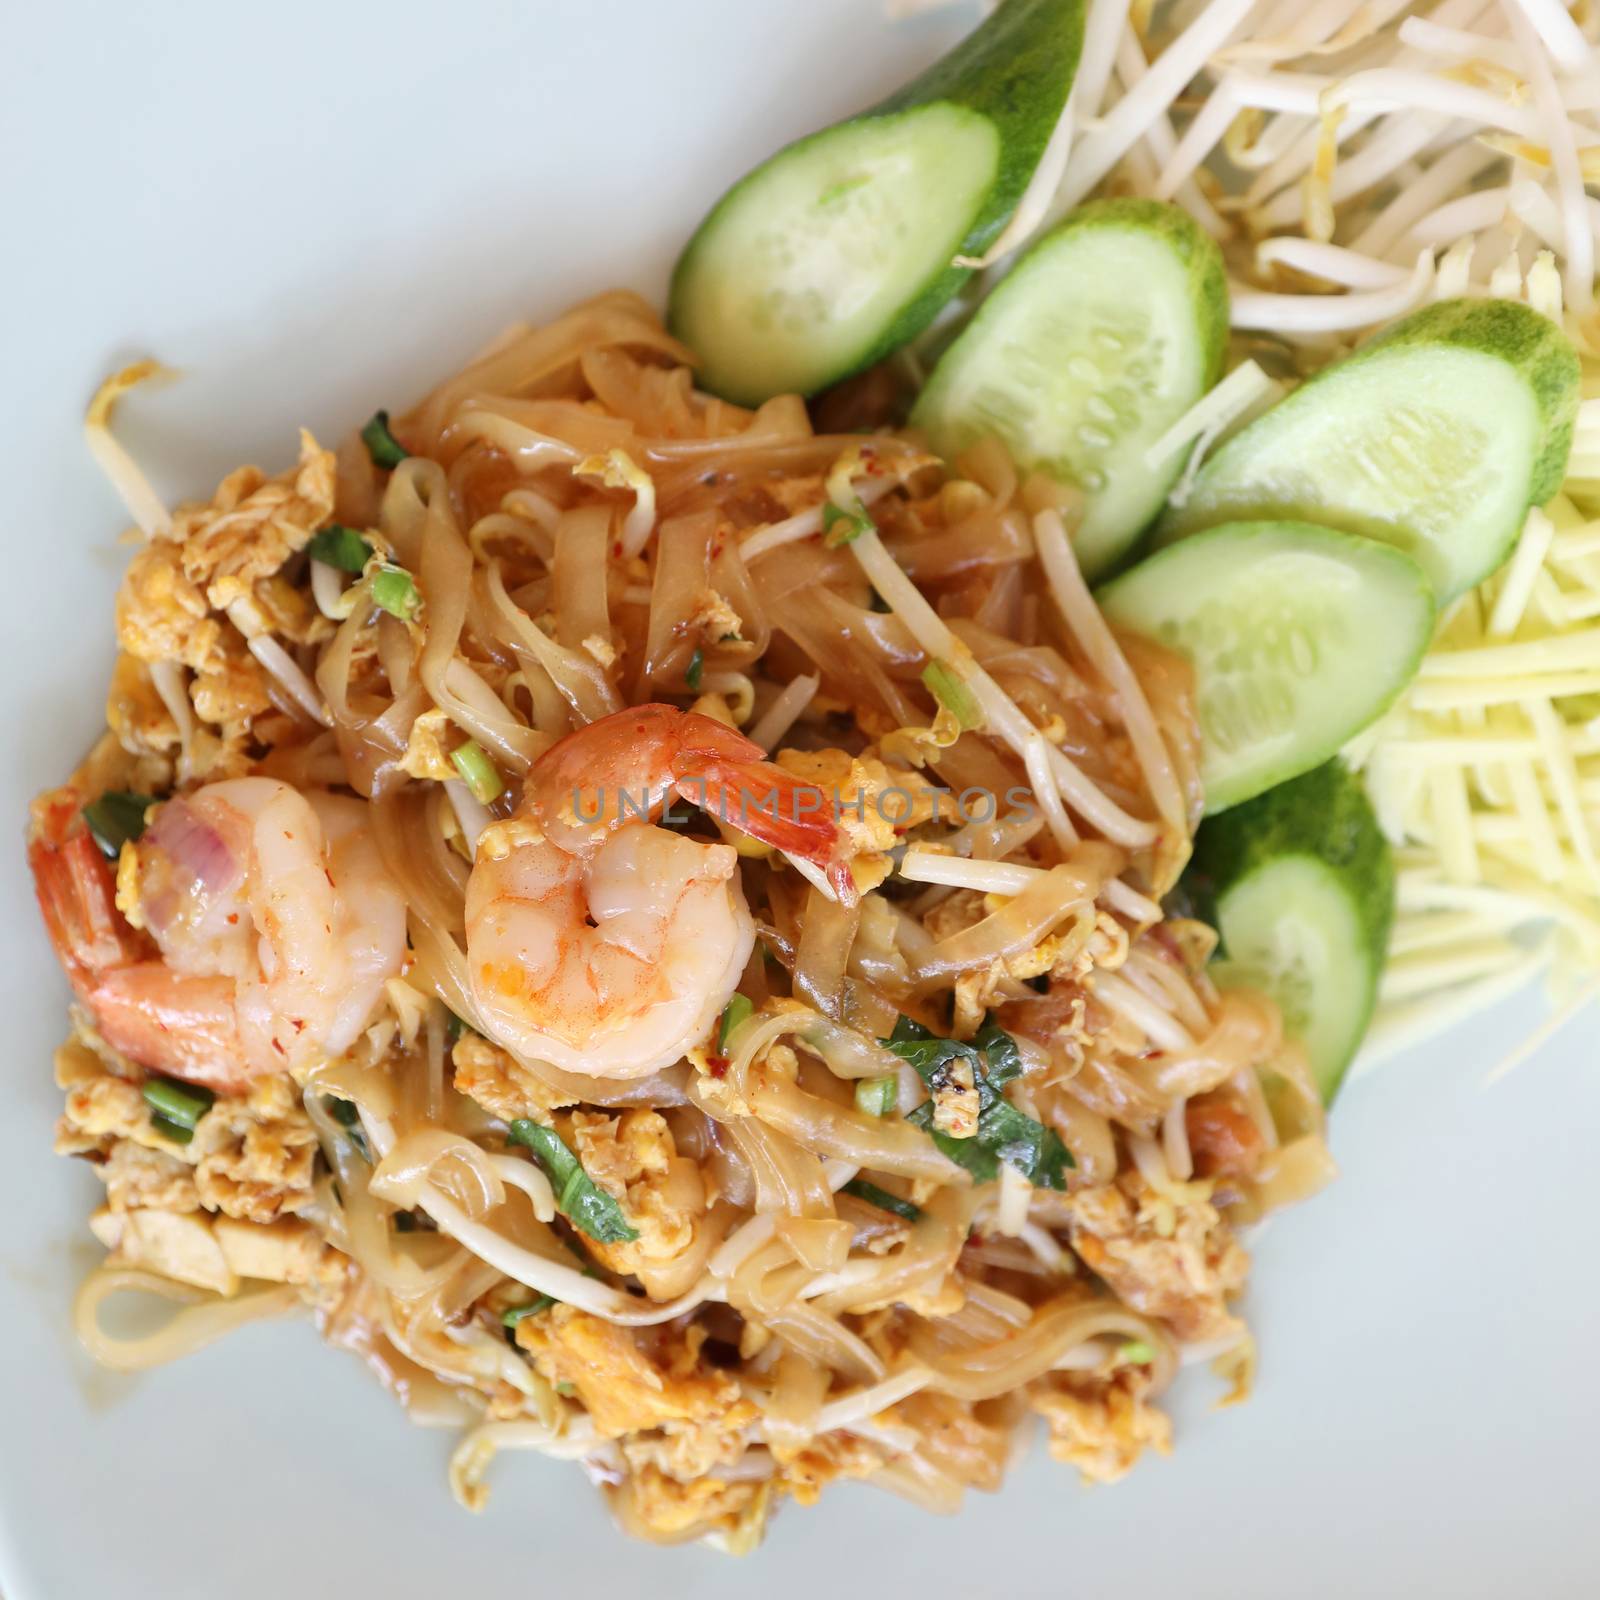 Shrimp pad thai noodles with shrimps on top , Thai food